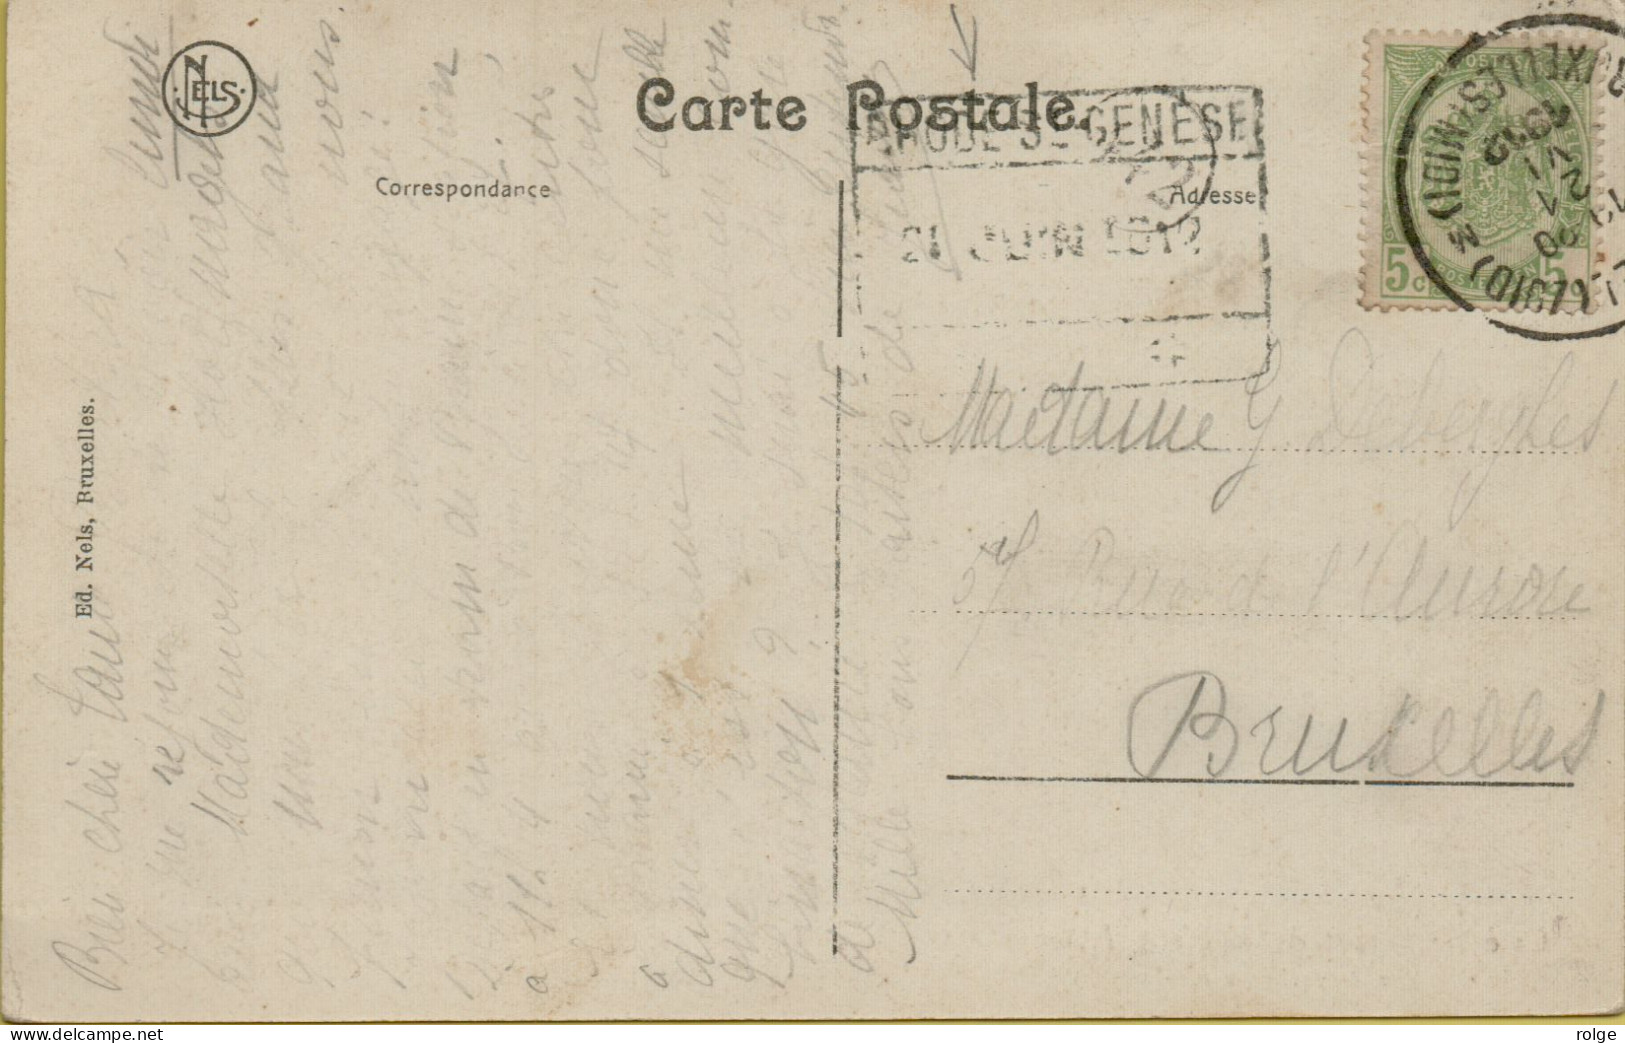 F056   SPOORWEGSTEMPEL GEBRUIKT ALS STATIONSNAAMSTEMPEL     RHODE ST GENESSE  1912 - Documenten & Fragmenten